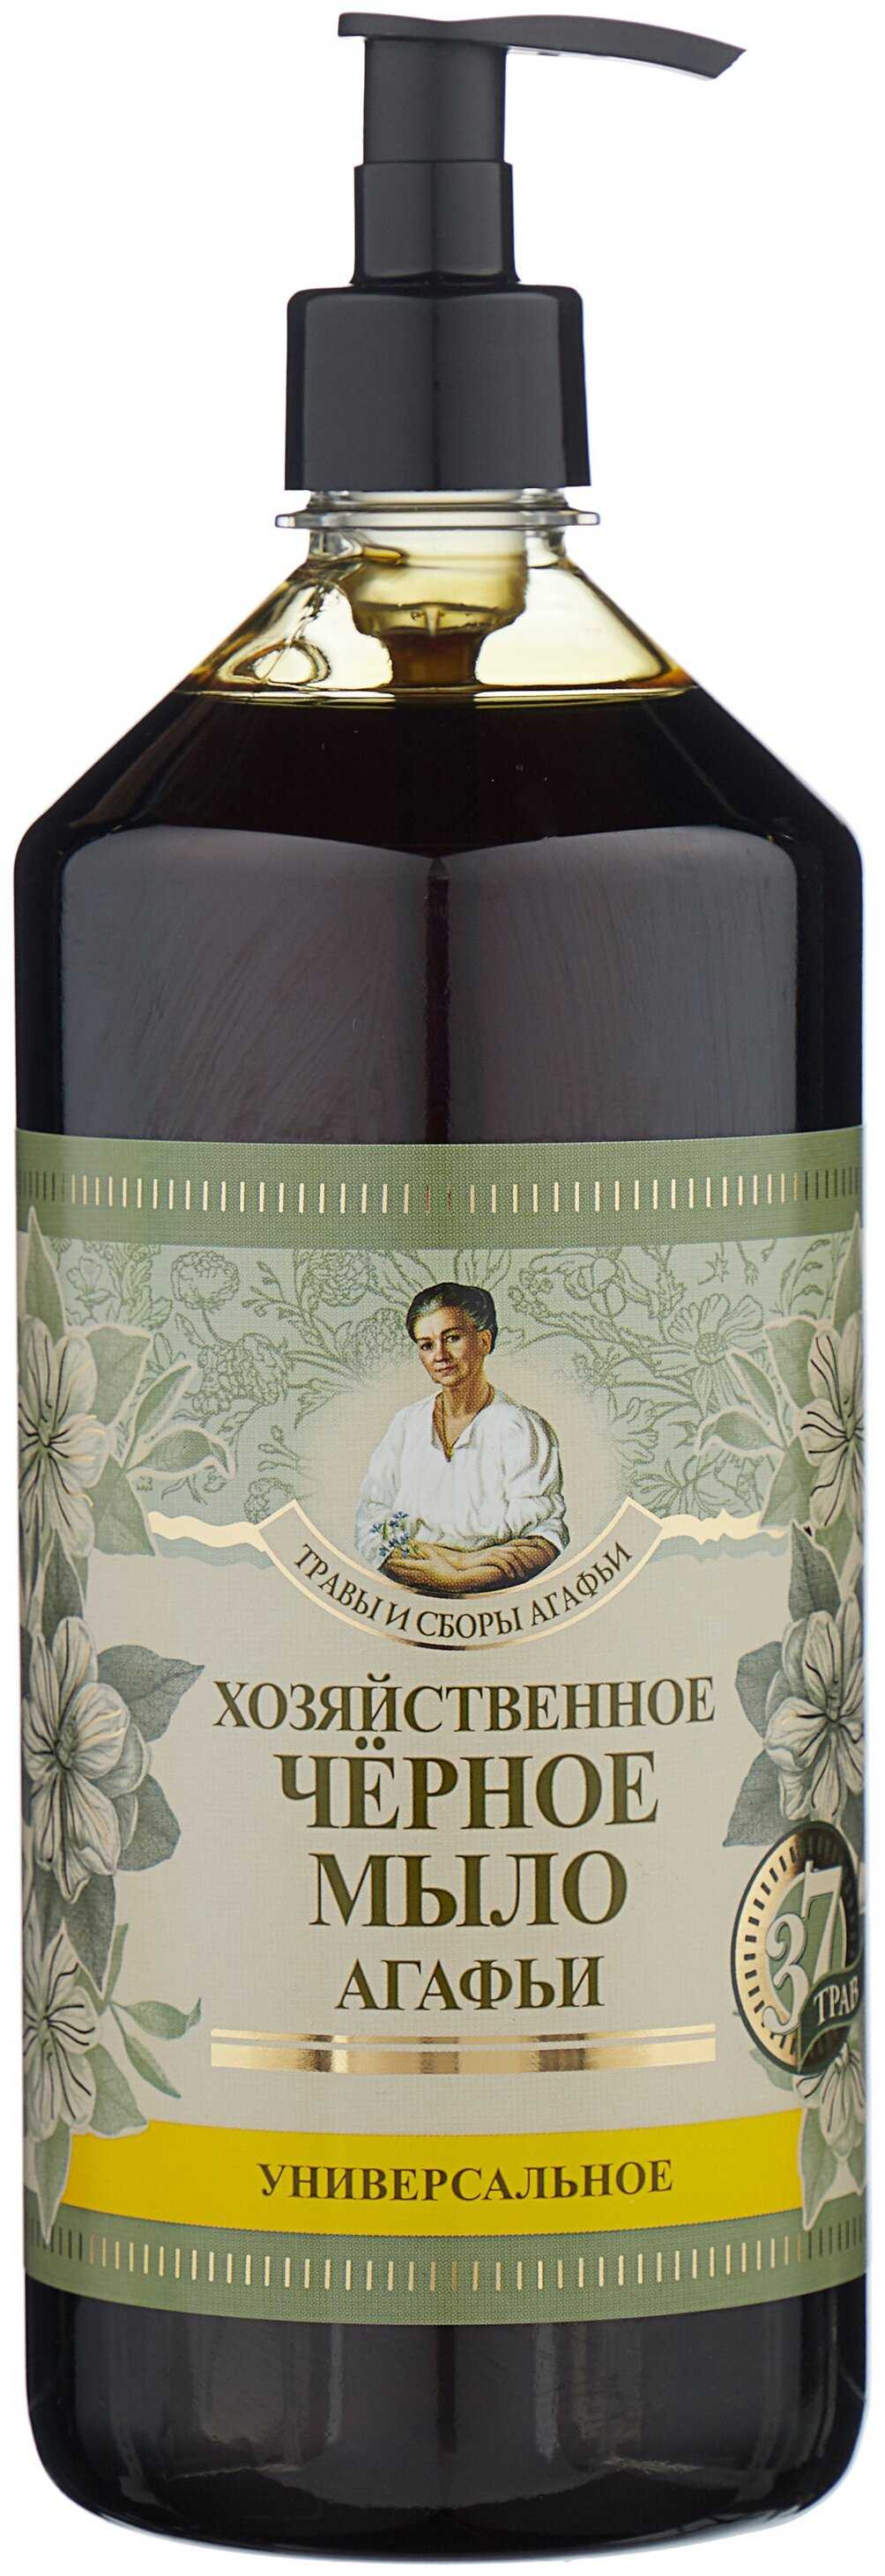 Мыло рецепты бабушки агафьи натуральное сибирское черное мыло — отзывы